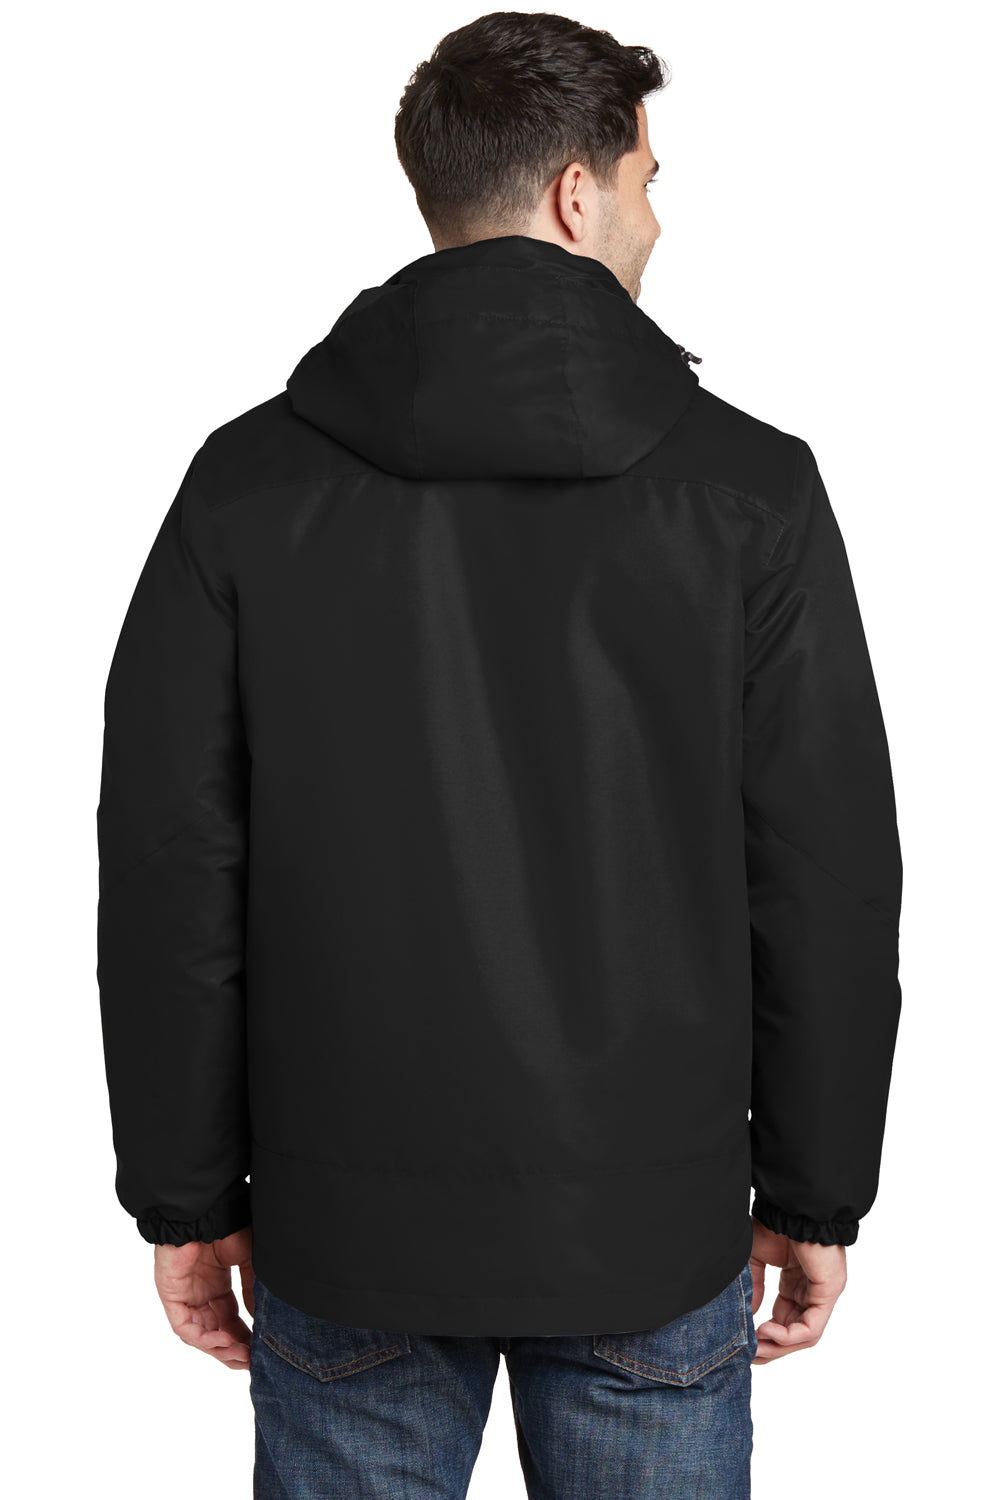 Port Authority J332 Mens Vortex 3-in-1 Waterproof Full Zip Hooded Jacket Black Back